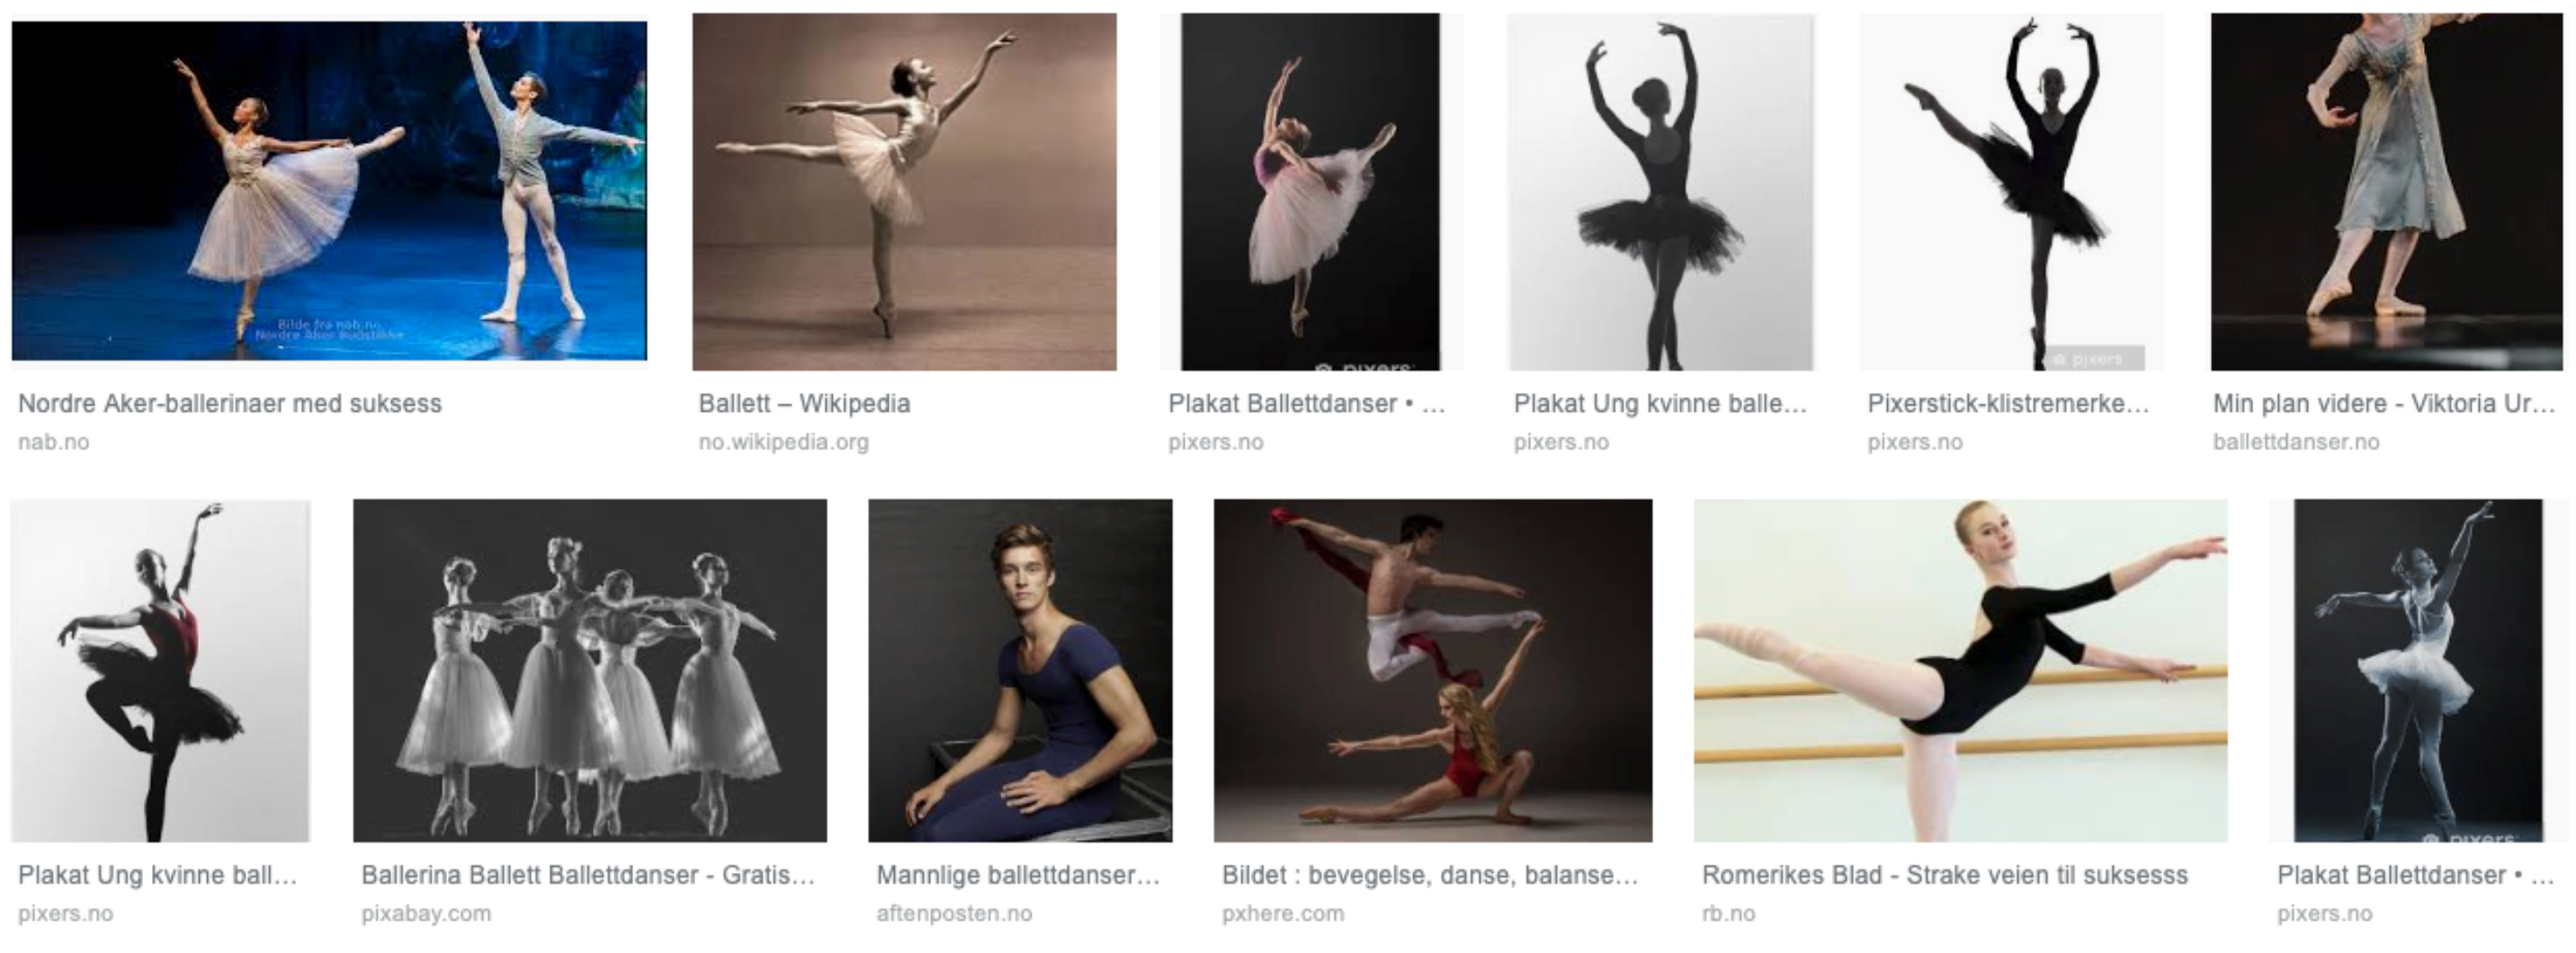 Bildesøket viser 12 bilder. De fleste bildene viser kvinner som danser ballett. Under et portrettbilde av en mann i ballettdrakt står det "mannlig ballettdanser".